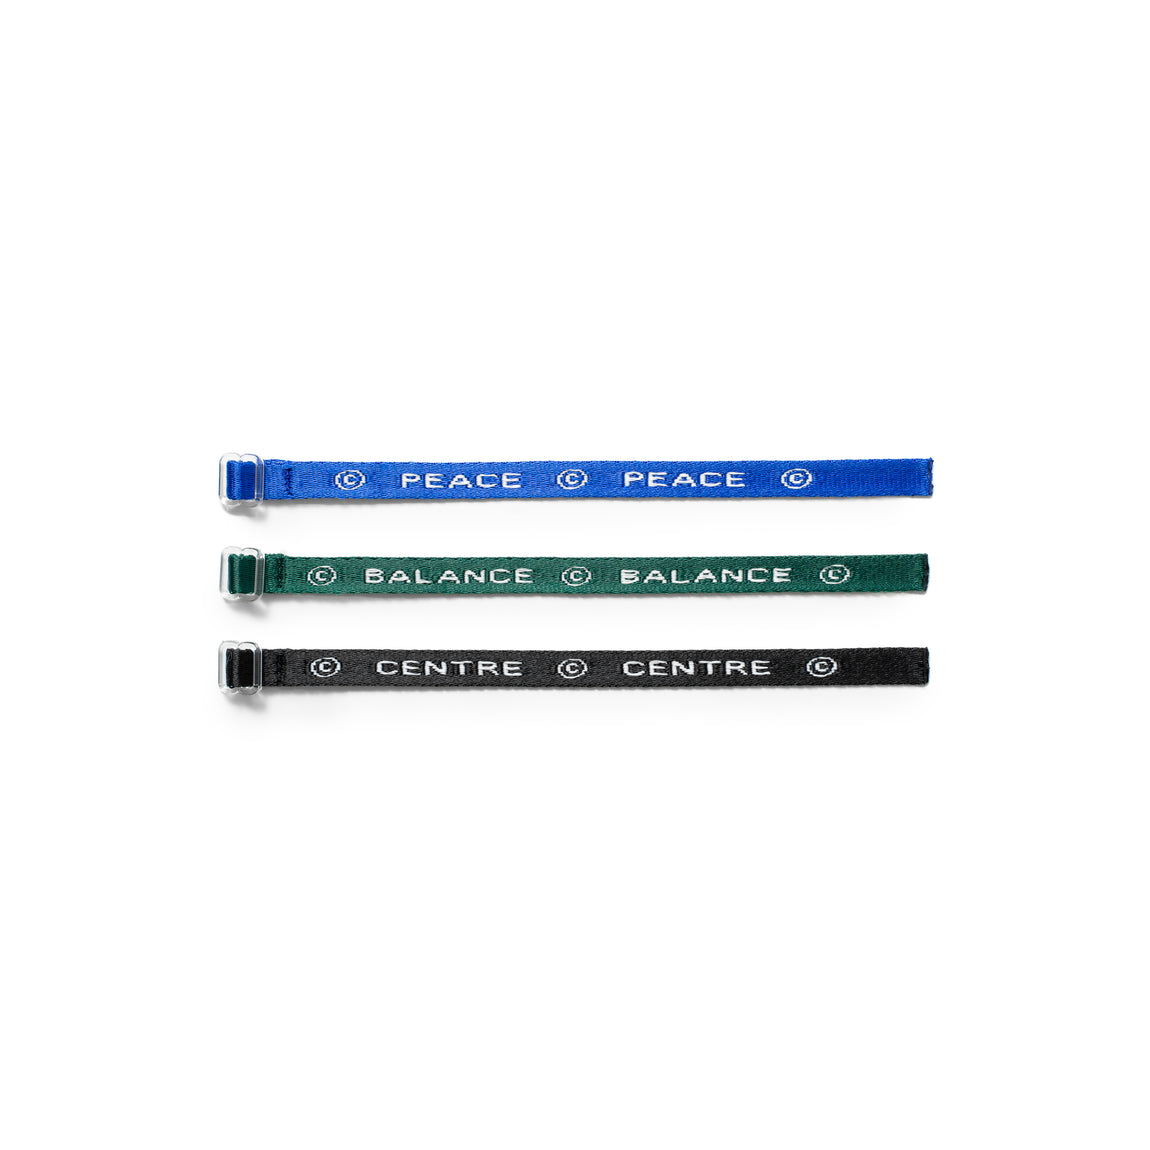 Centre Harmony Wristband Set (3-Pack) - Centre Harmony Wristband Set (3-Pack) - 